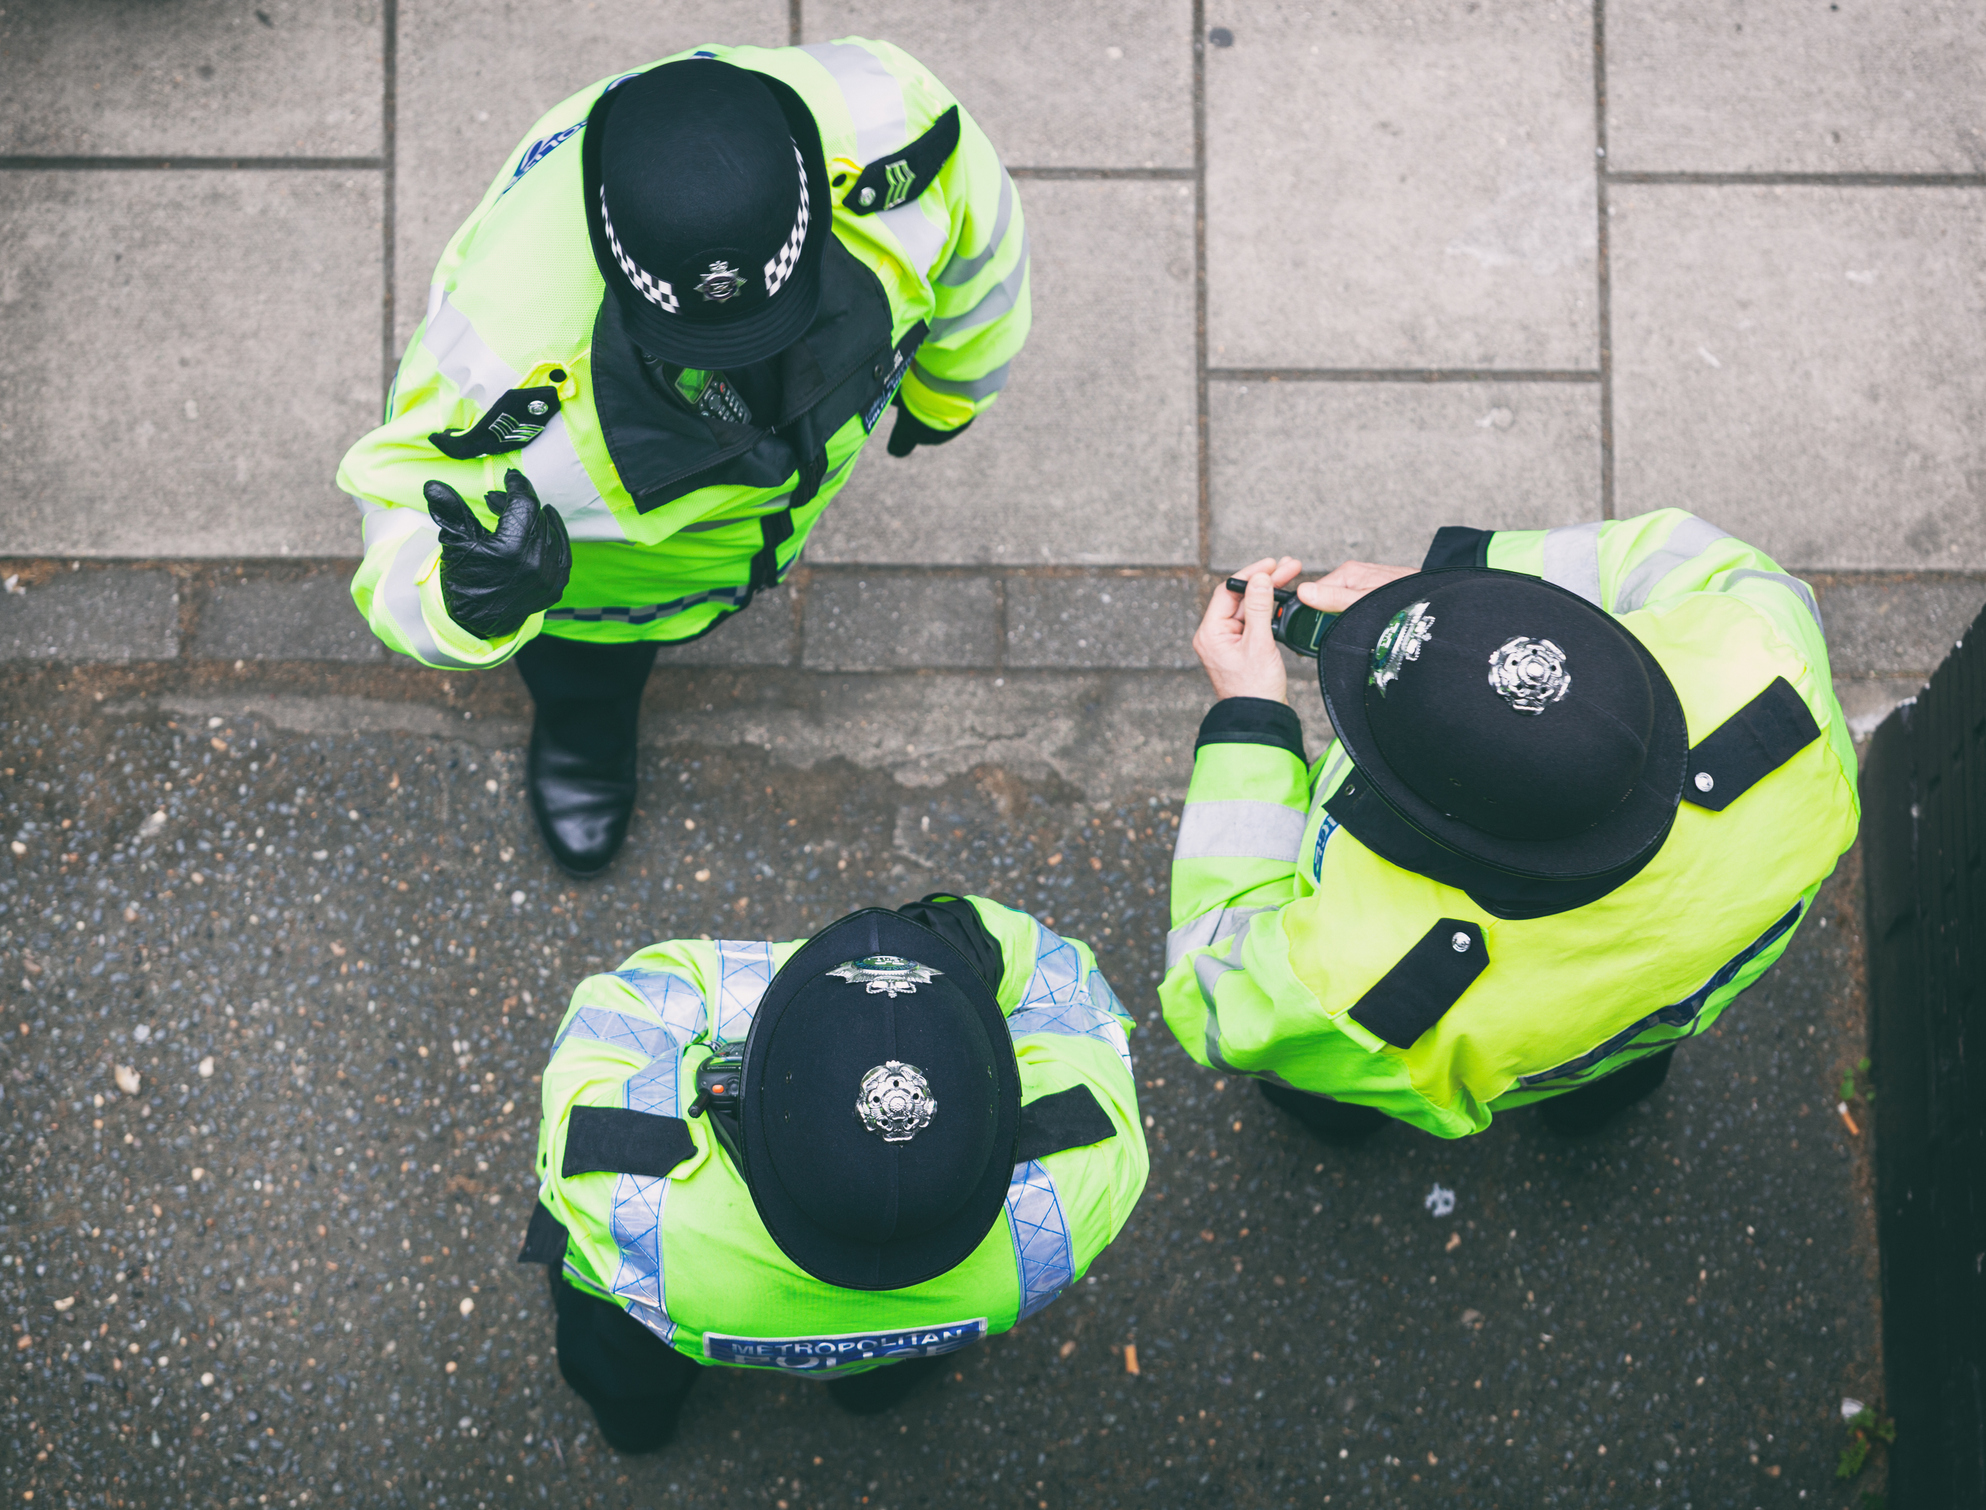 Metropolitan Police officers on patrol in London